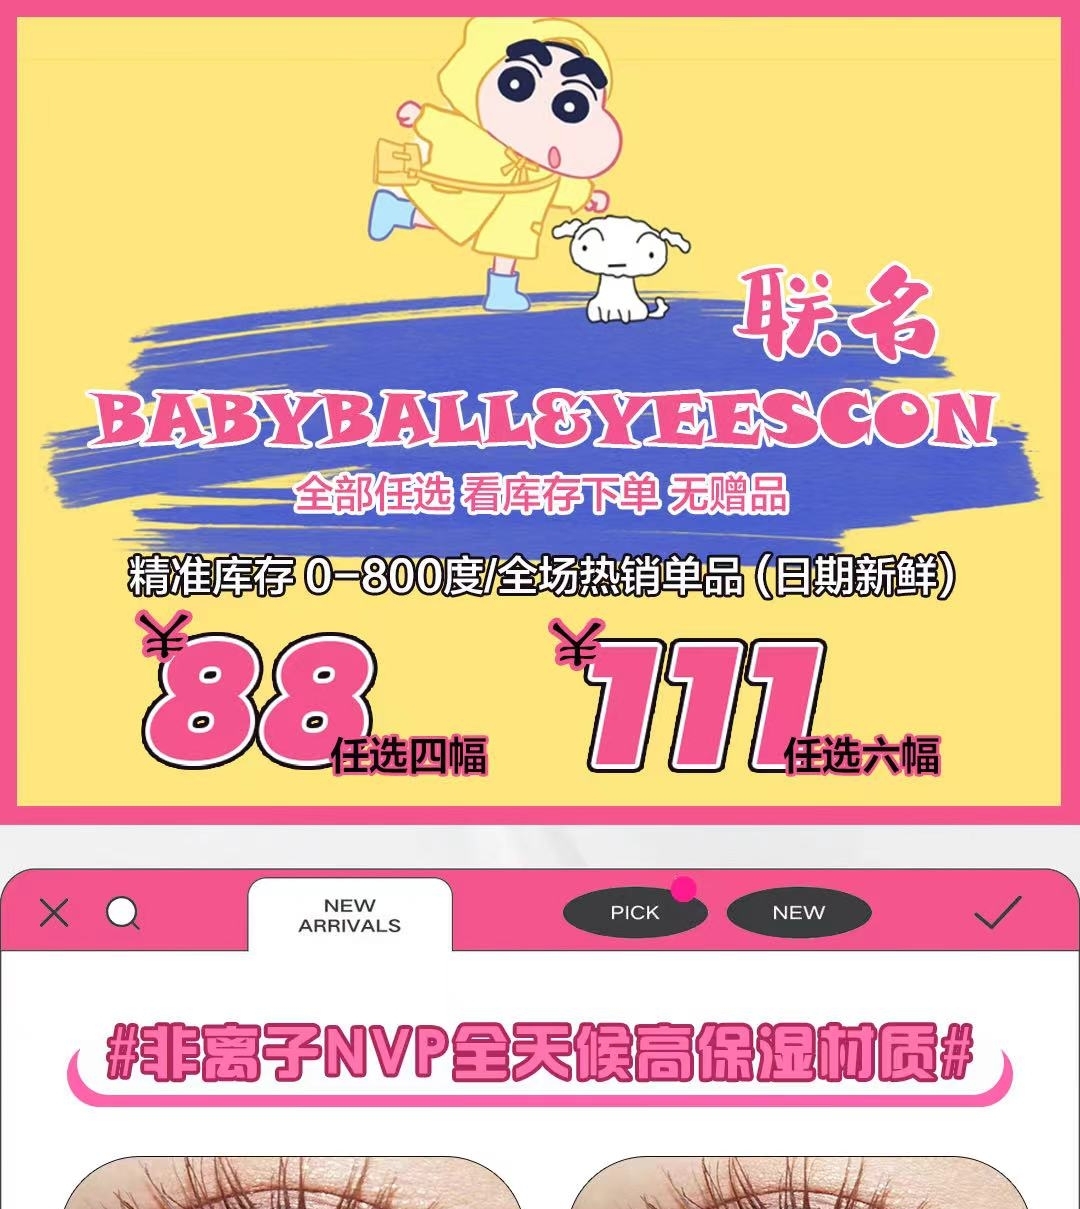 【月抛/年抛】Babyball·YEESCON 全年优惠活动 加量不加价 双十一特刊